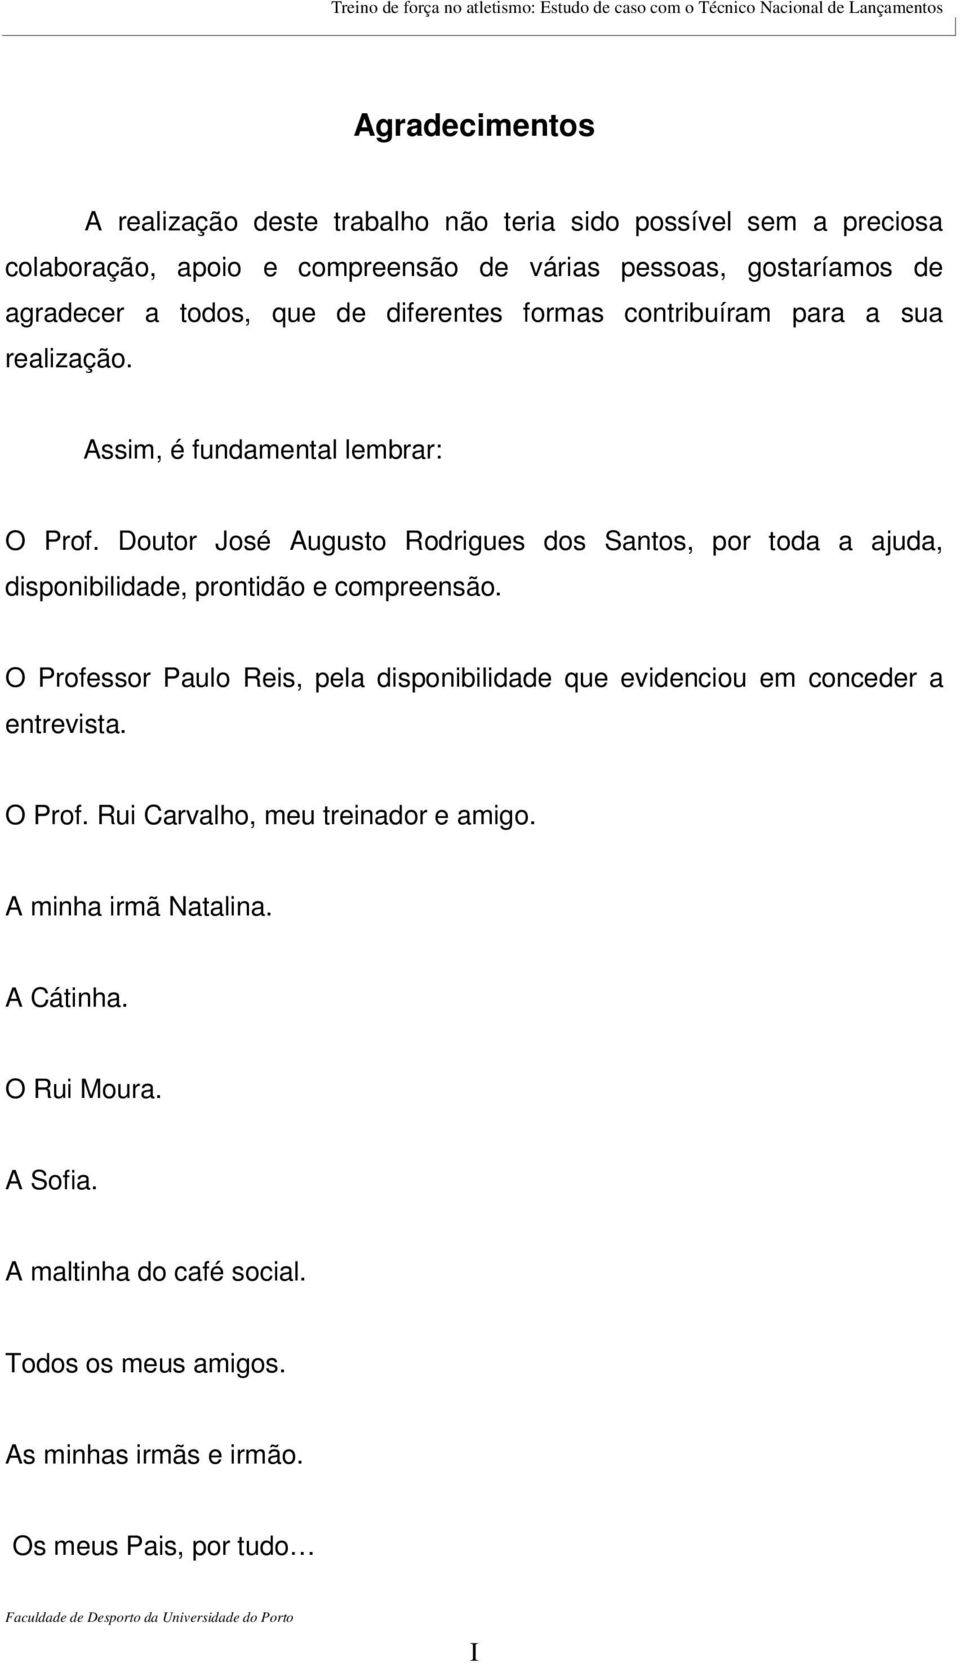 Doutor José Augusto Rodrigues dos Santos, por toda a ajuda, disponibilidade, prontidão e compreensão.